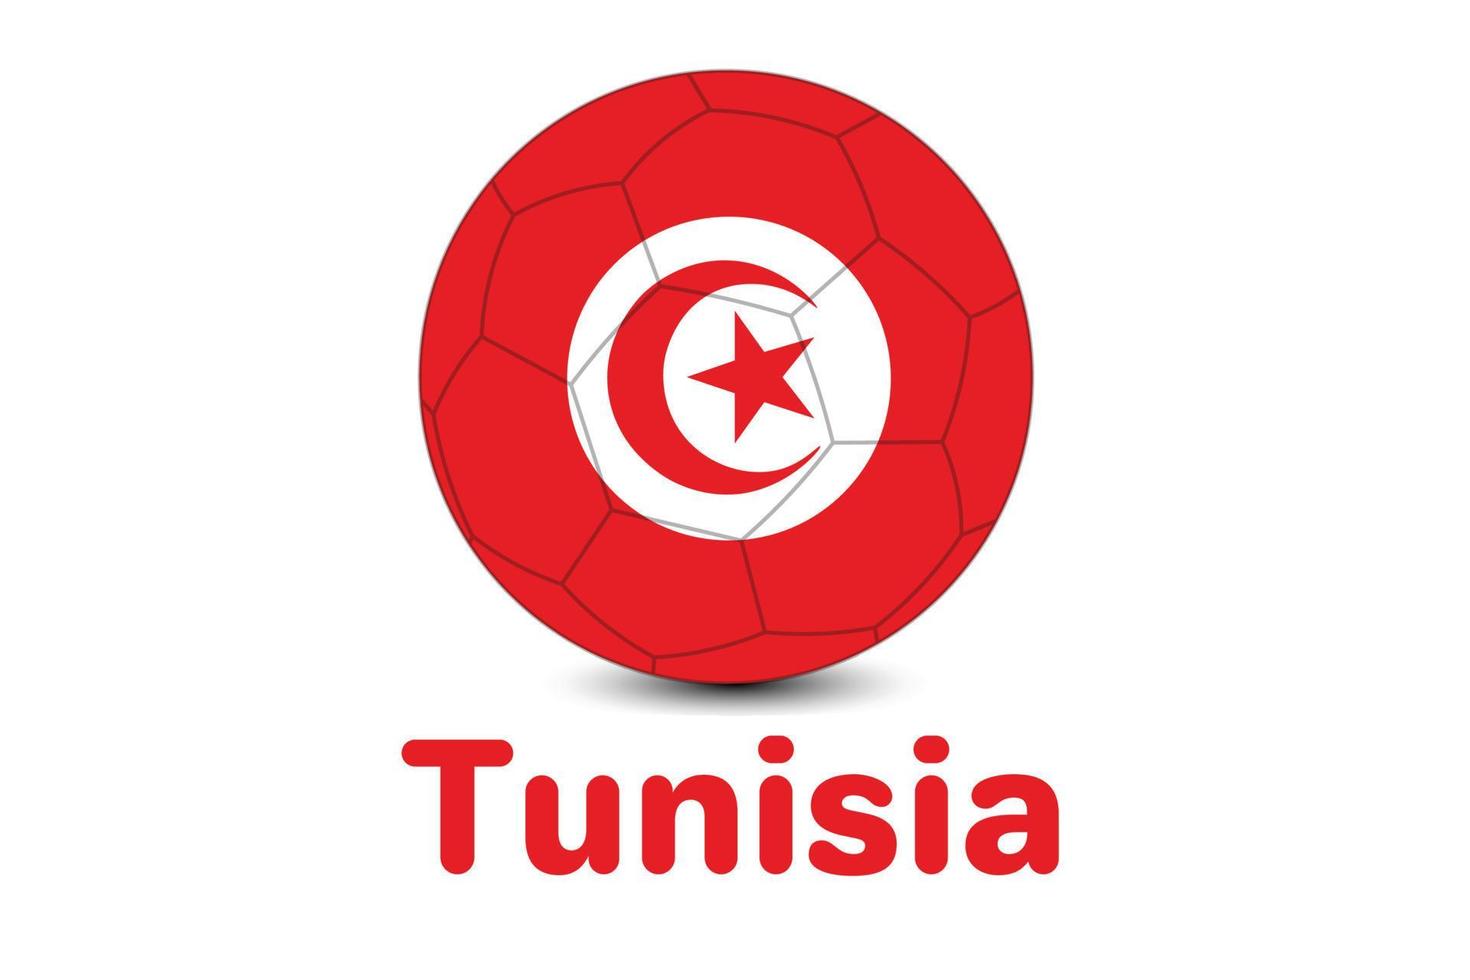 bandeira da tunísia da copa do mundo de futebol da fifa. copa do mundo de qatar 2022. ilustração da bandeira da tunísia. vetor